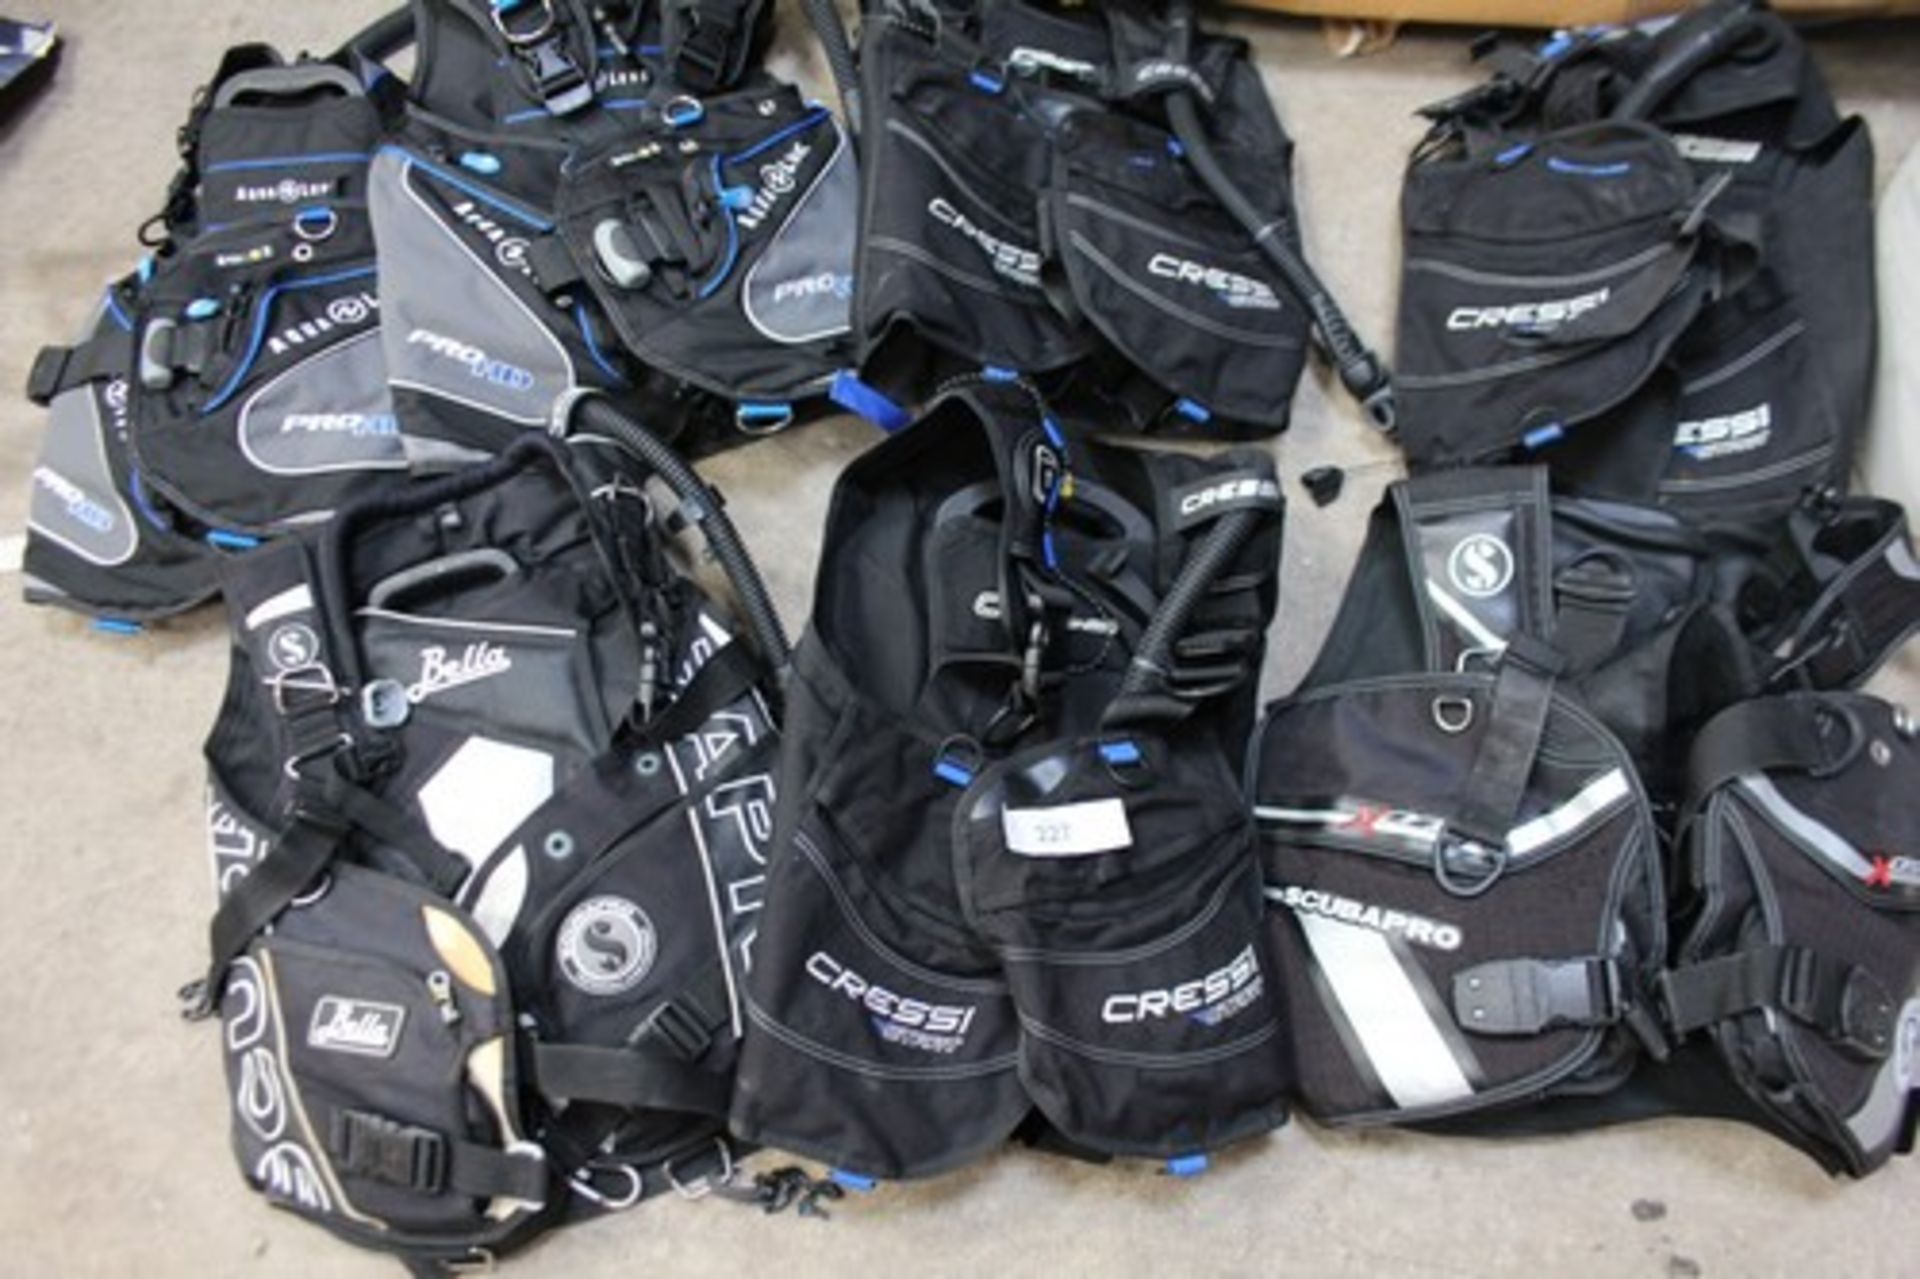 2 x Aqualung Pro HD BCD diving vests, size XS, 3 x Cressi Start BCD diving vests, size S, 1 x